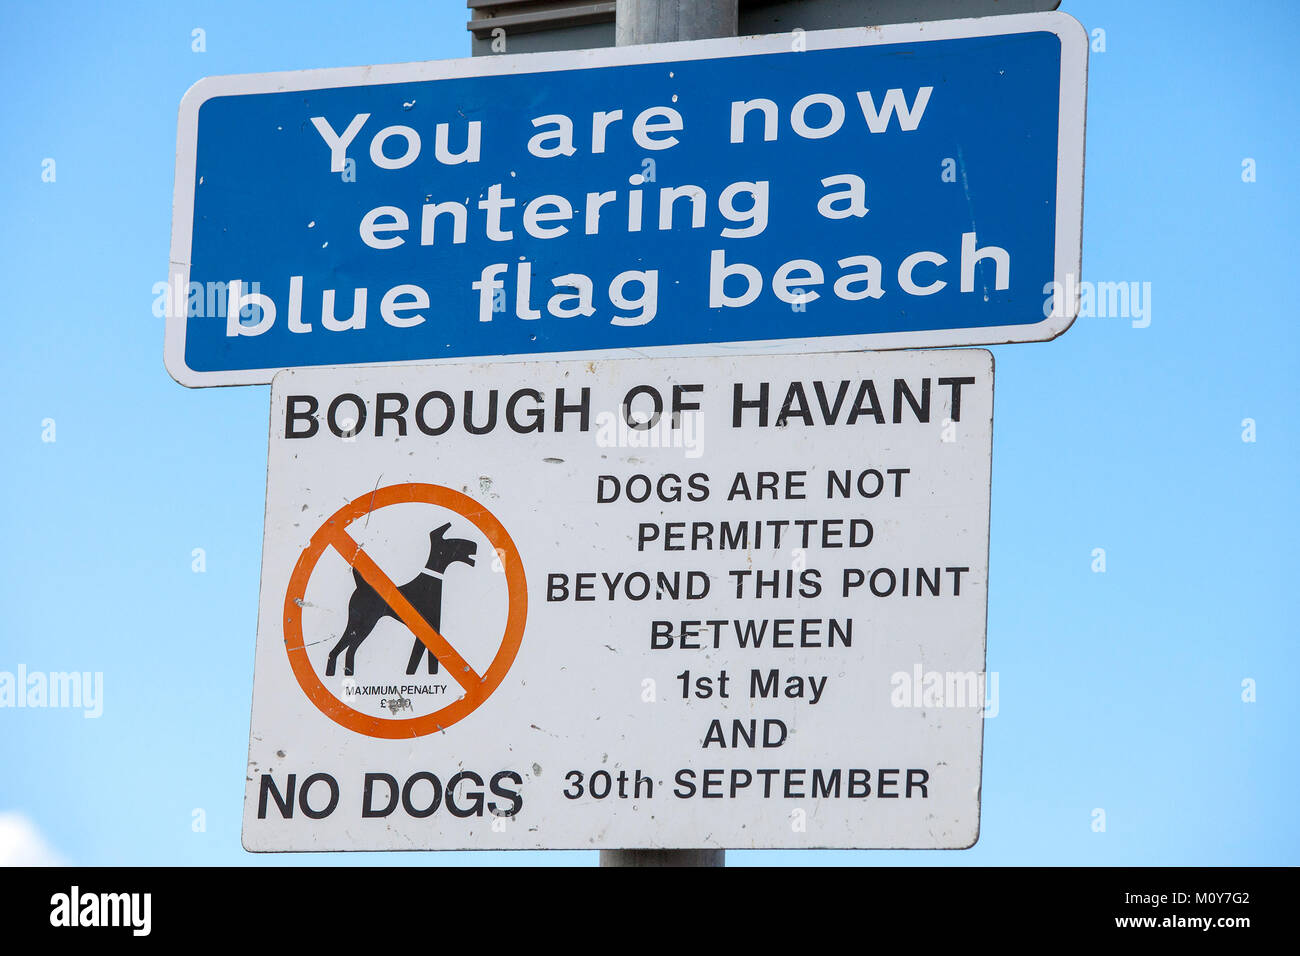 Si sta ora entrando in una spiaggia bandiera blu segno e un i cani non sono ammessi al di là di questo punto tra il 1 maggio e il 30 settembre No cani avviso Foto Stock